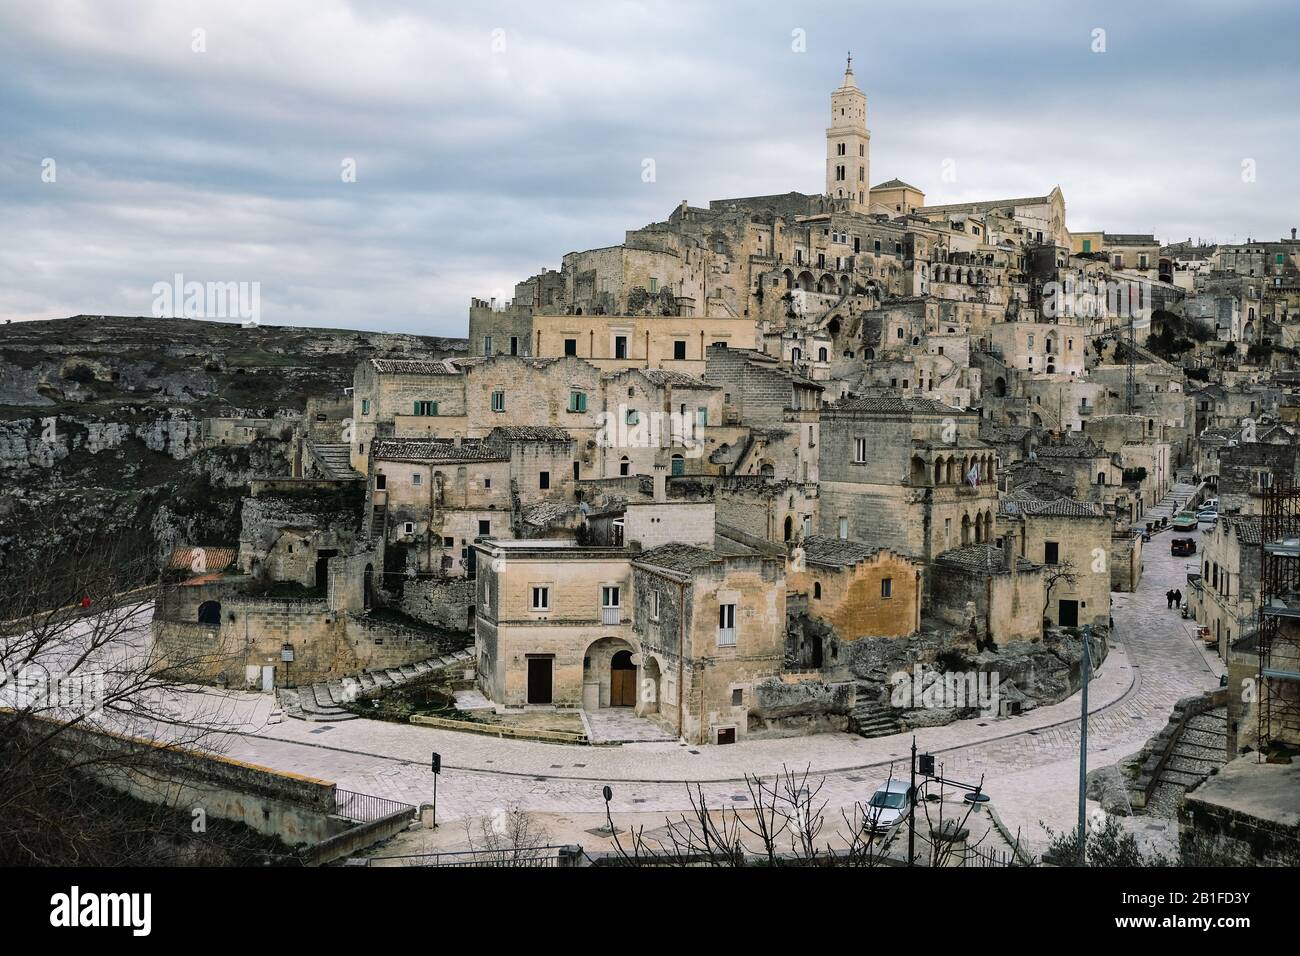 Vista panoramica della città vecchia di matera, italia, persone e auto, tradizionali case in pietra Foto Stock